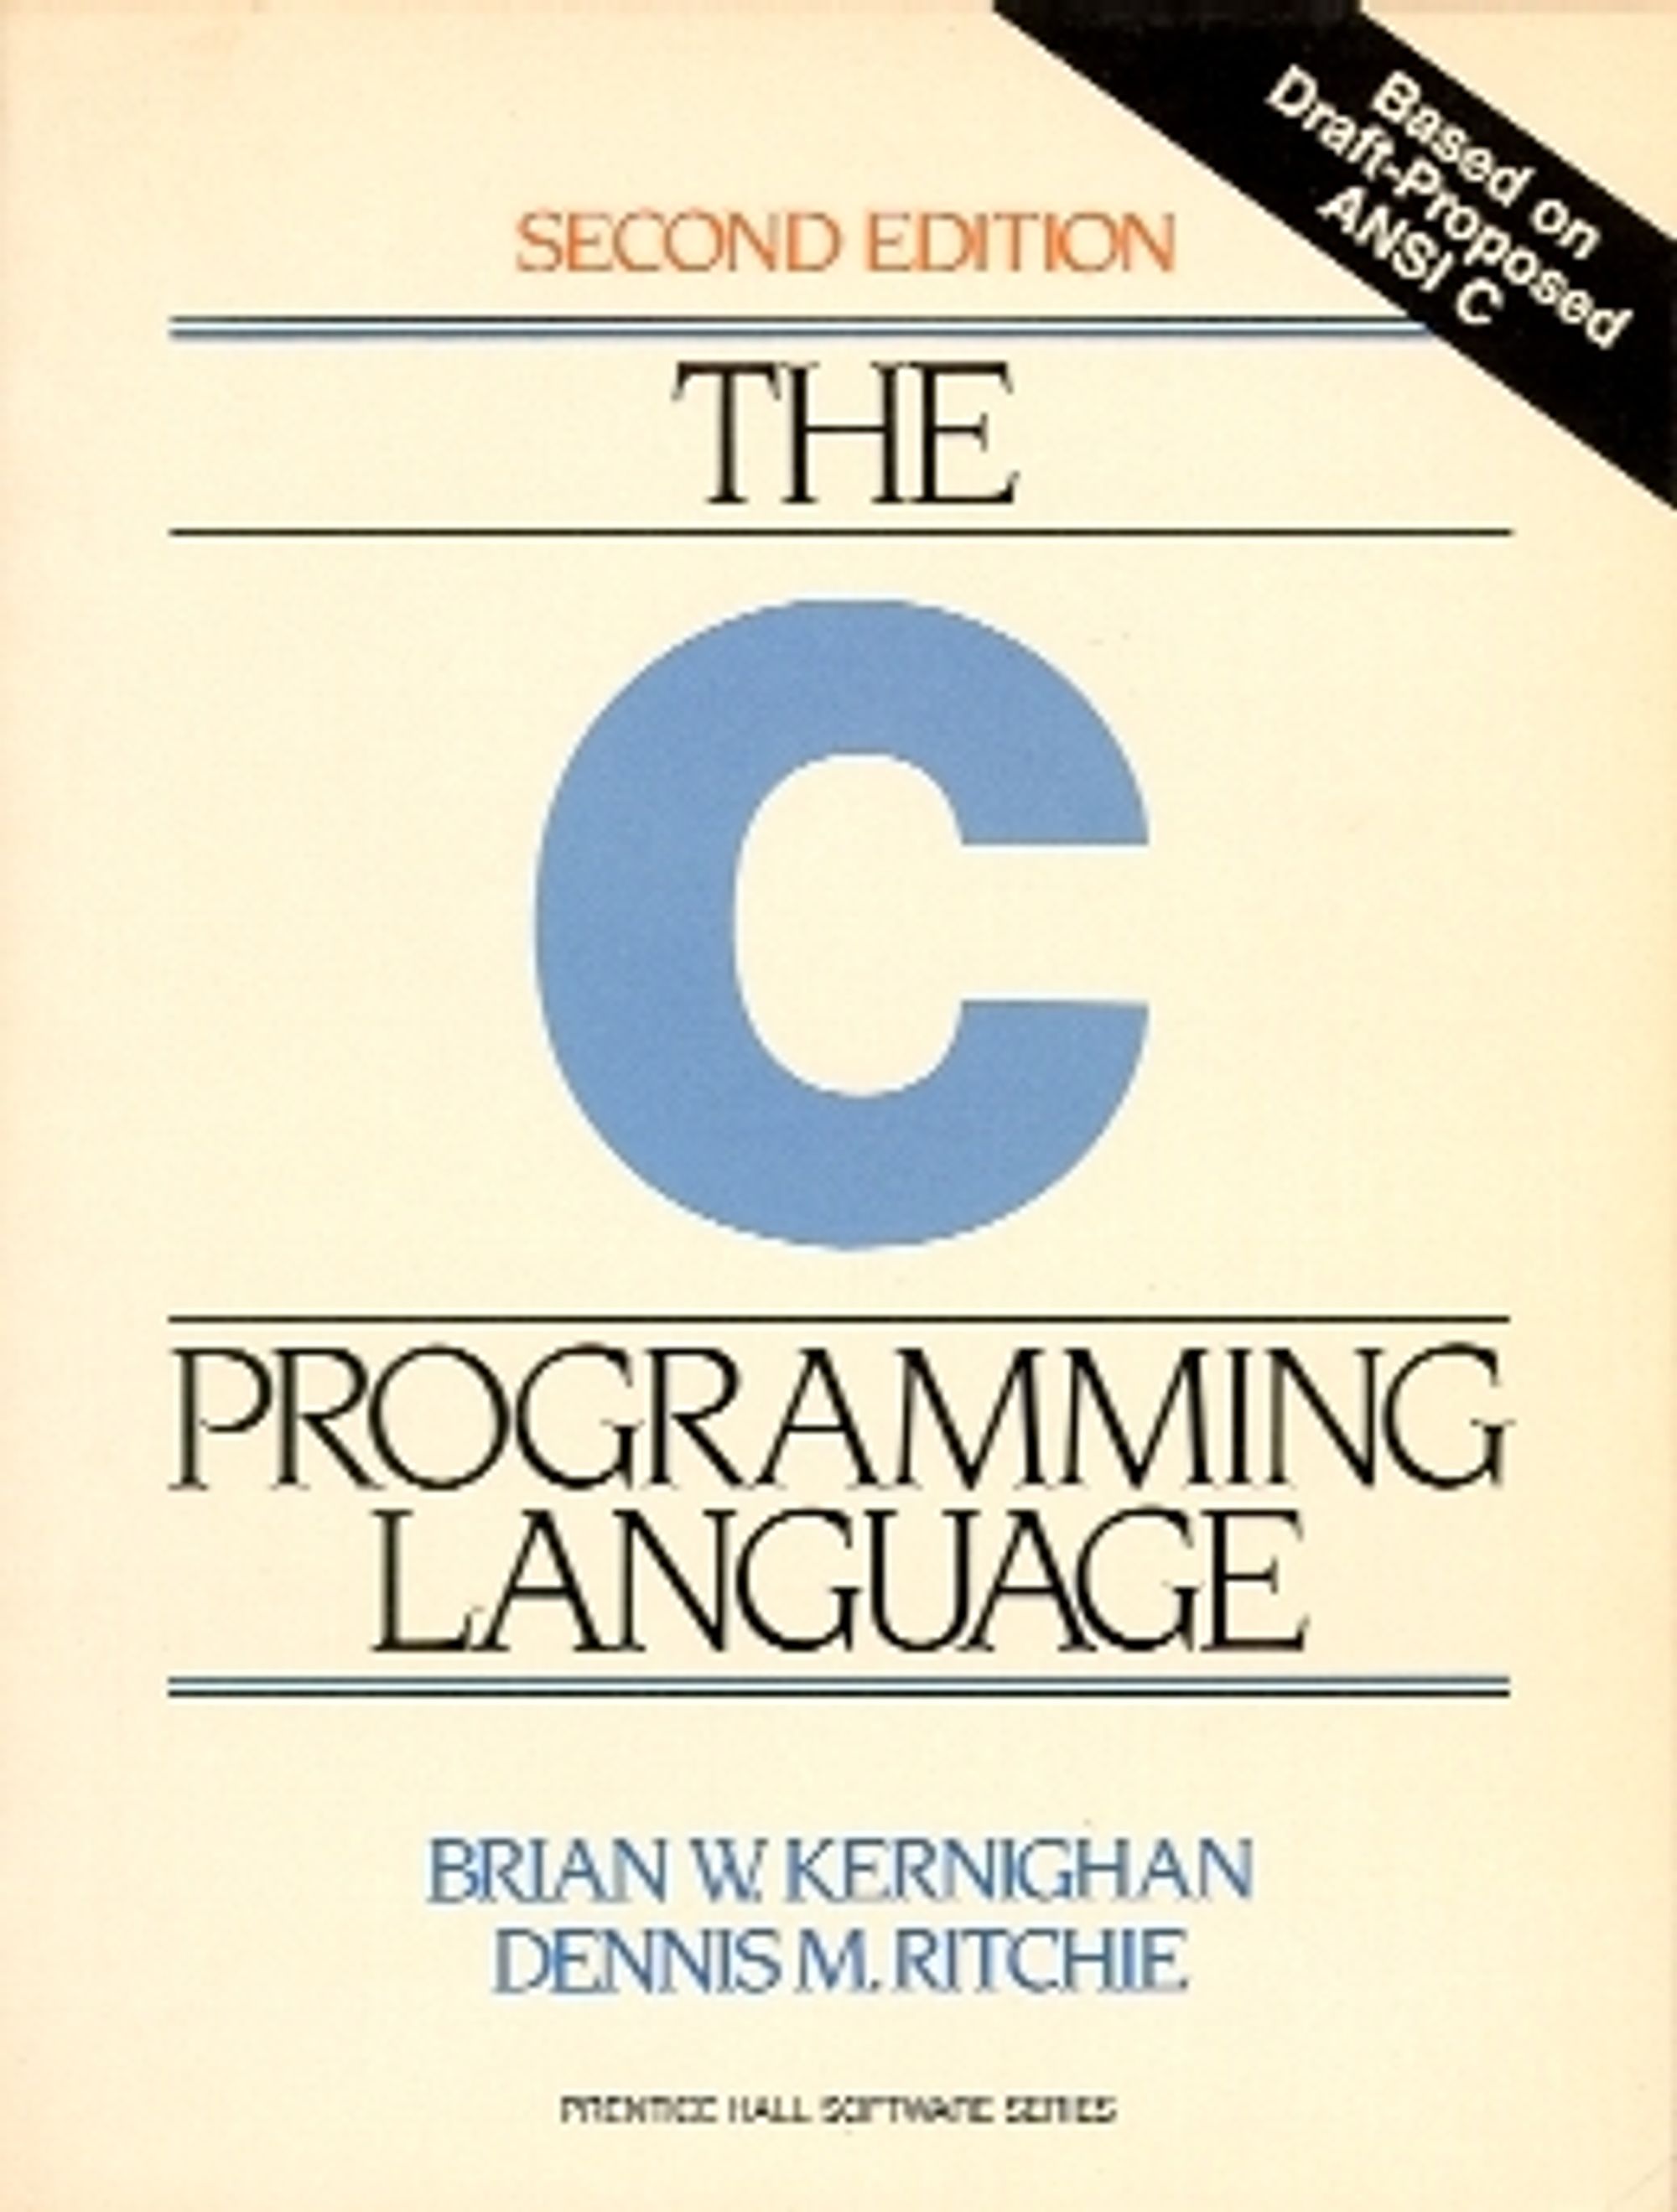 Andre utgave av boken «The C Programming Language» som Dennis Ritchie opprinnelig forfattet sammen med Brian Kernighan i 1978.